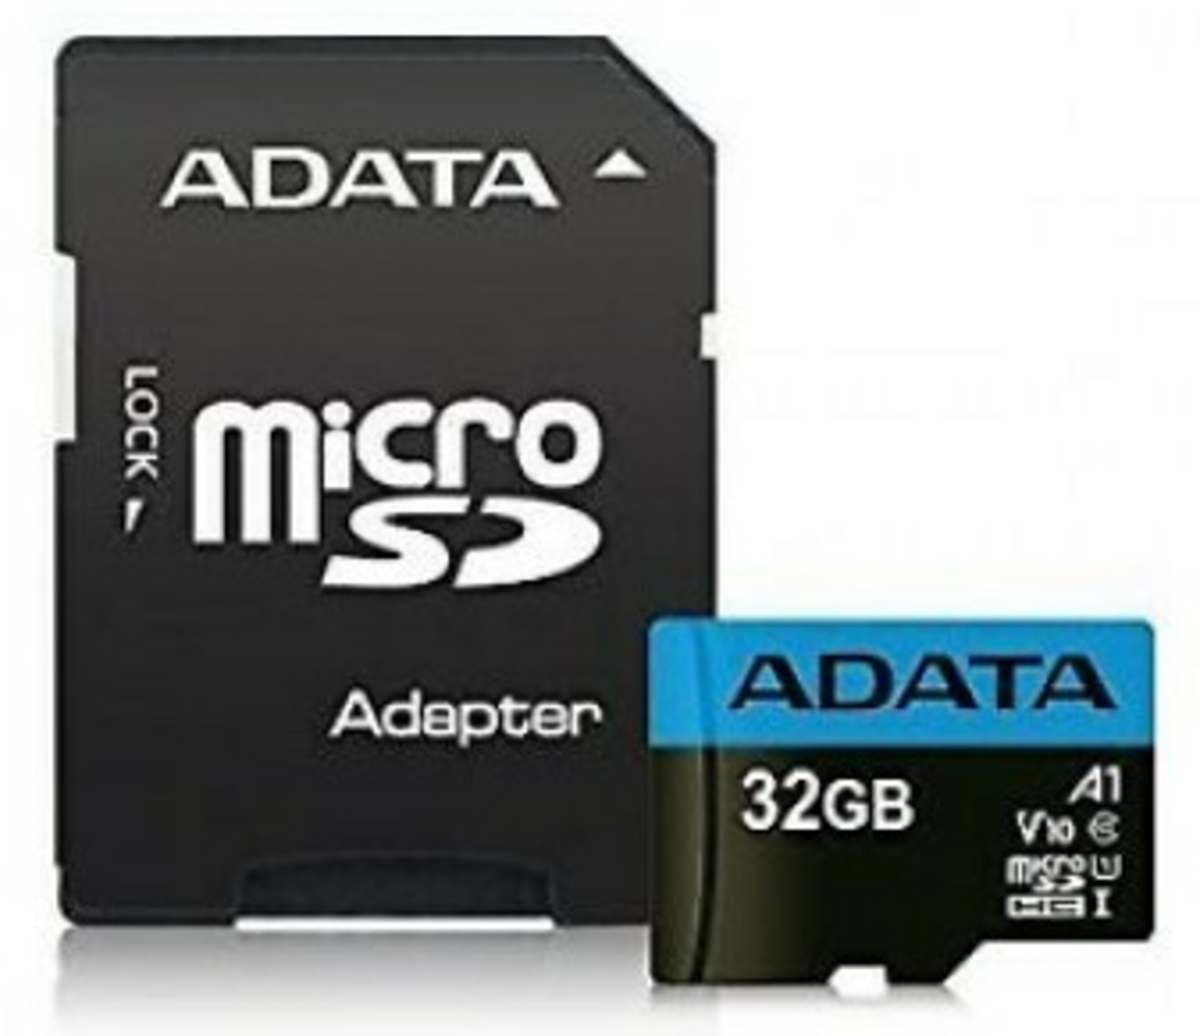 Minniskort ADATA MicroSd 32Gb